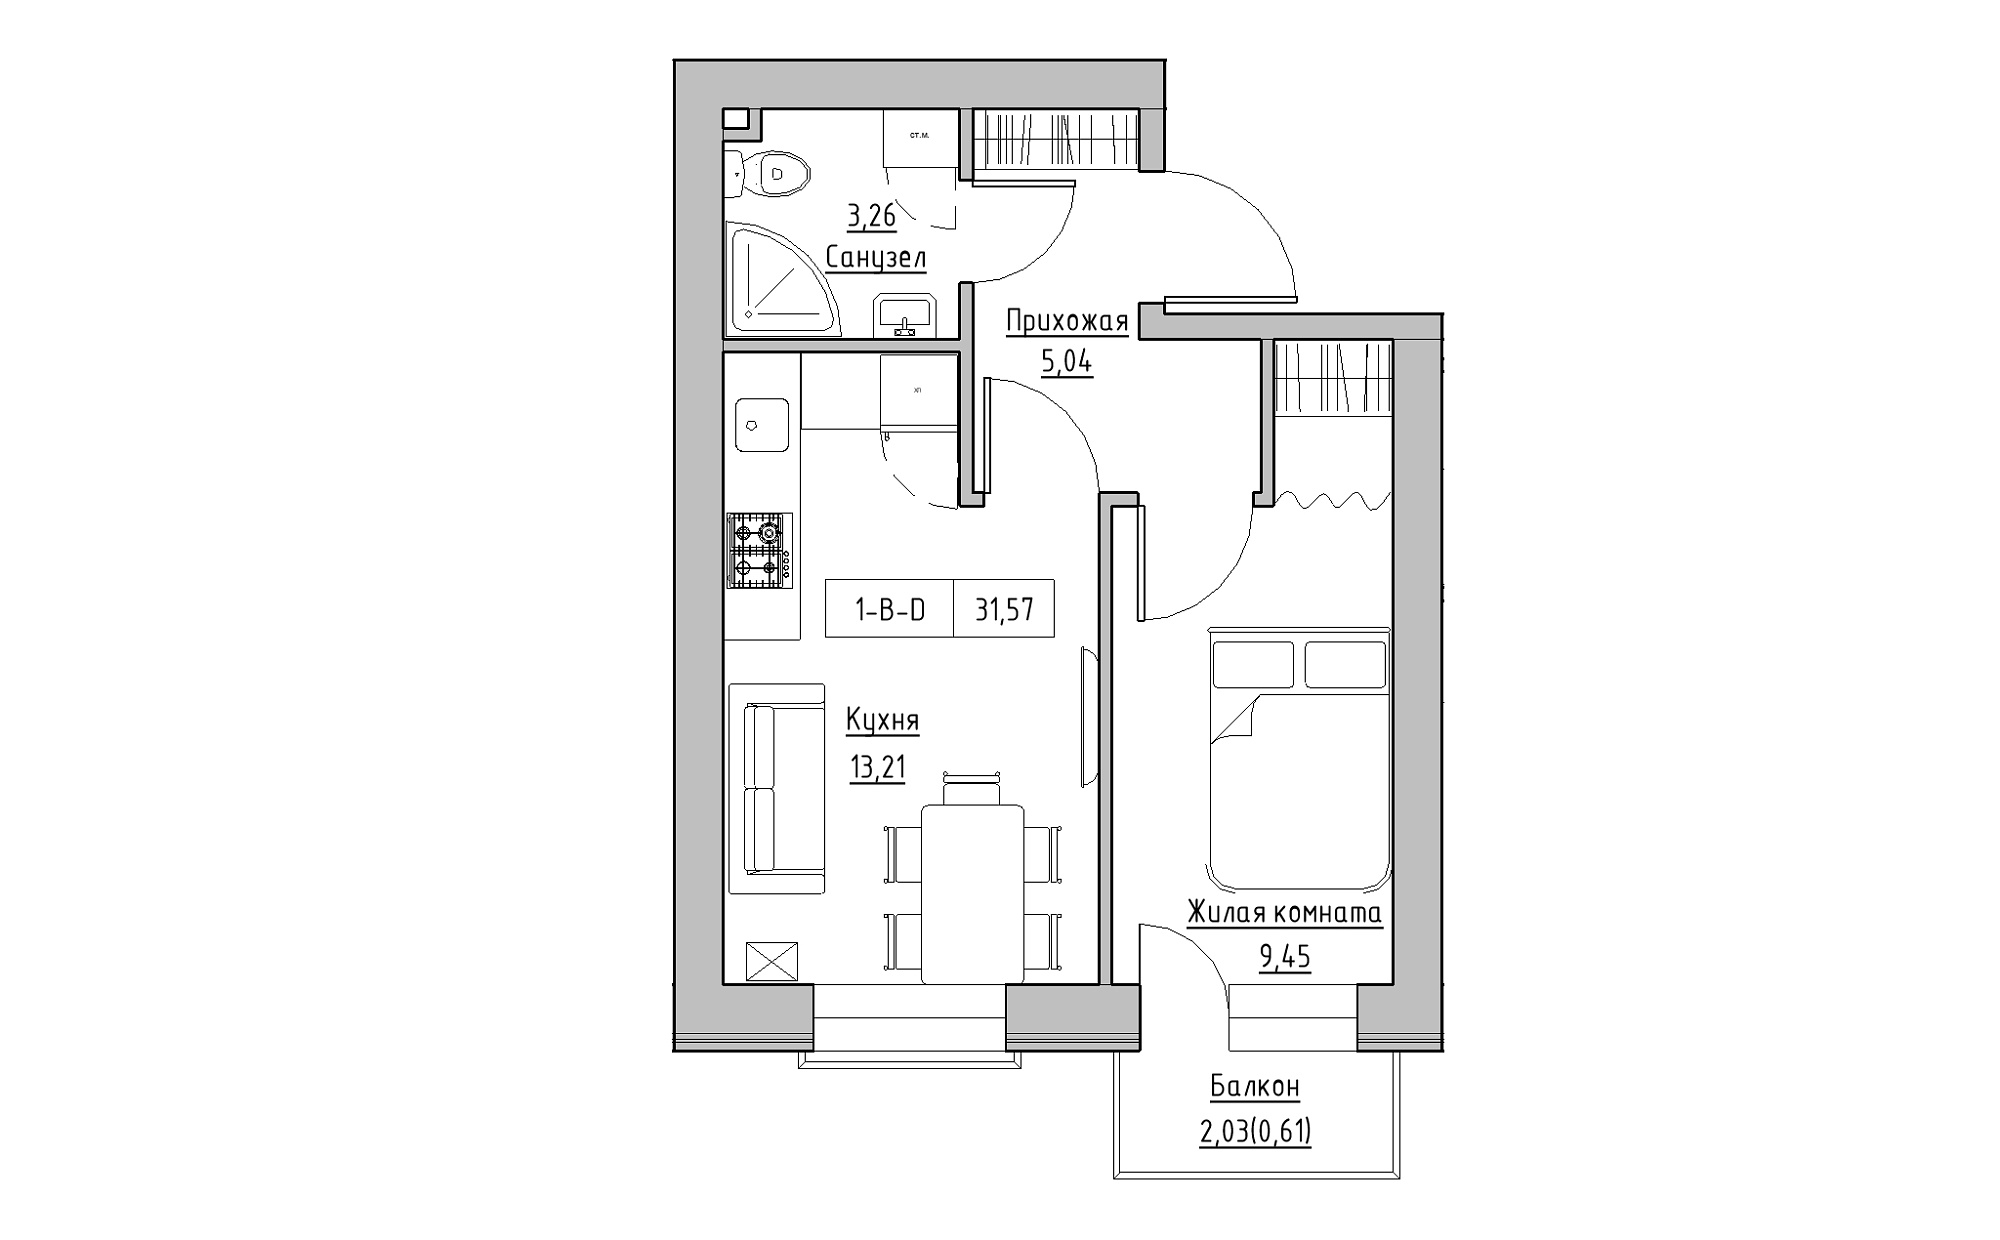 Планировка 1-к квартира площей 31.57м2, KS-022-03/0003.